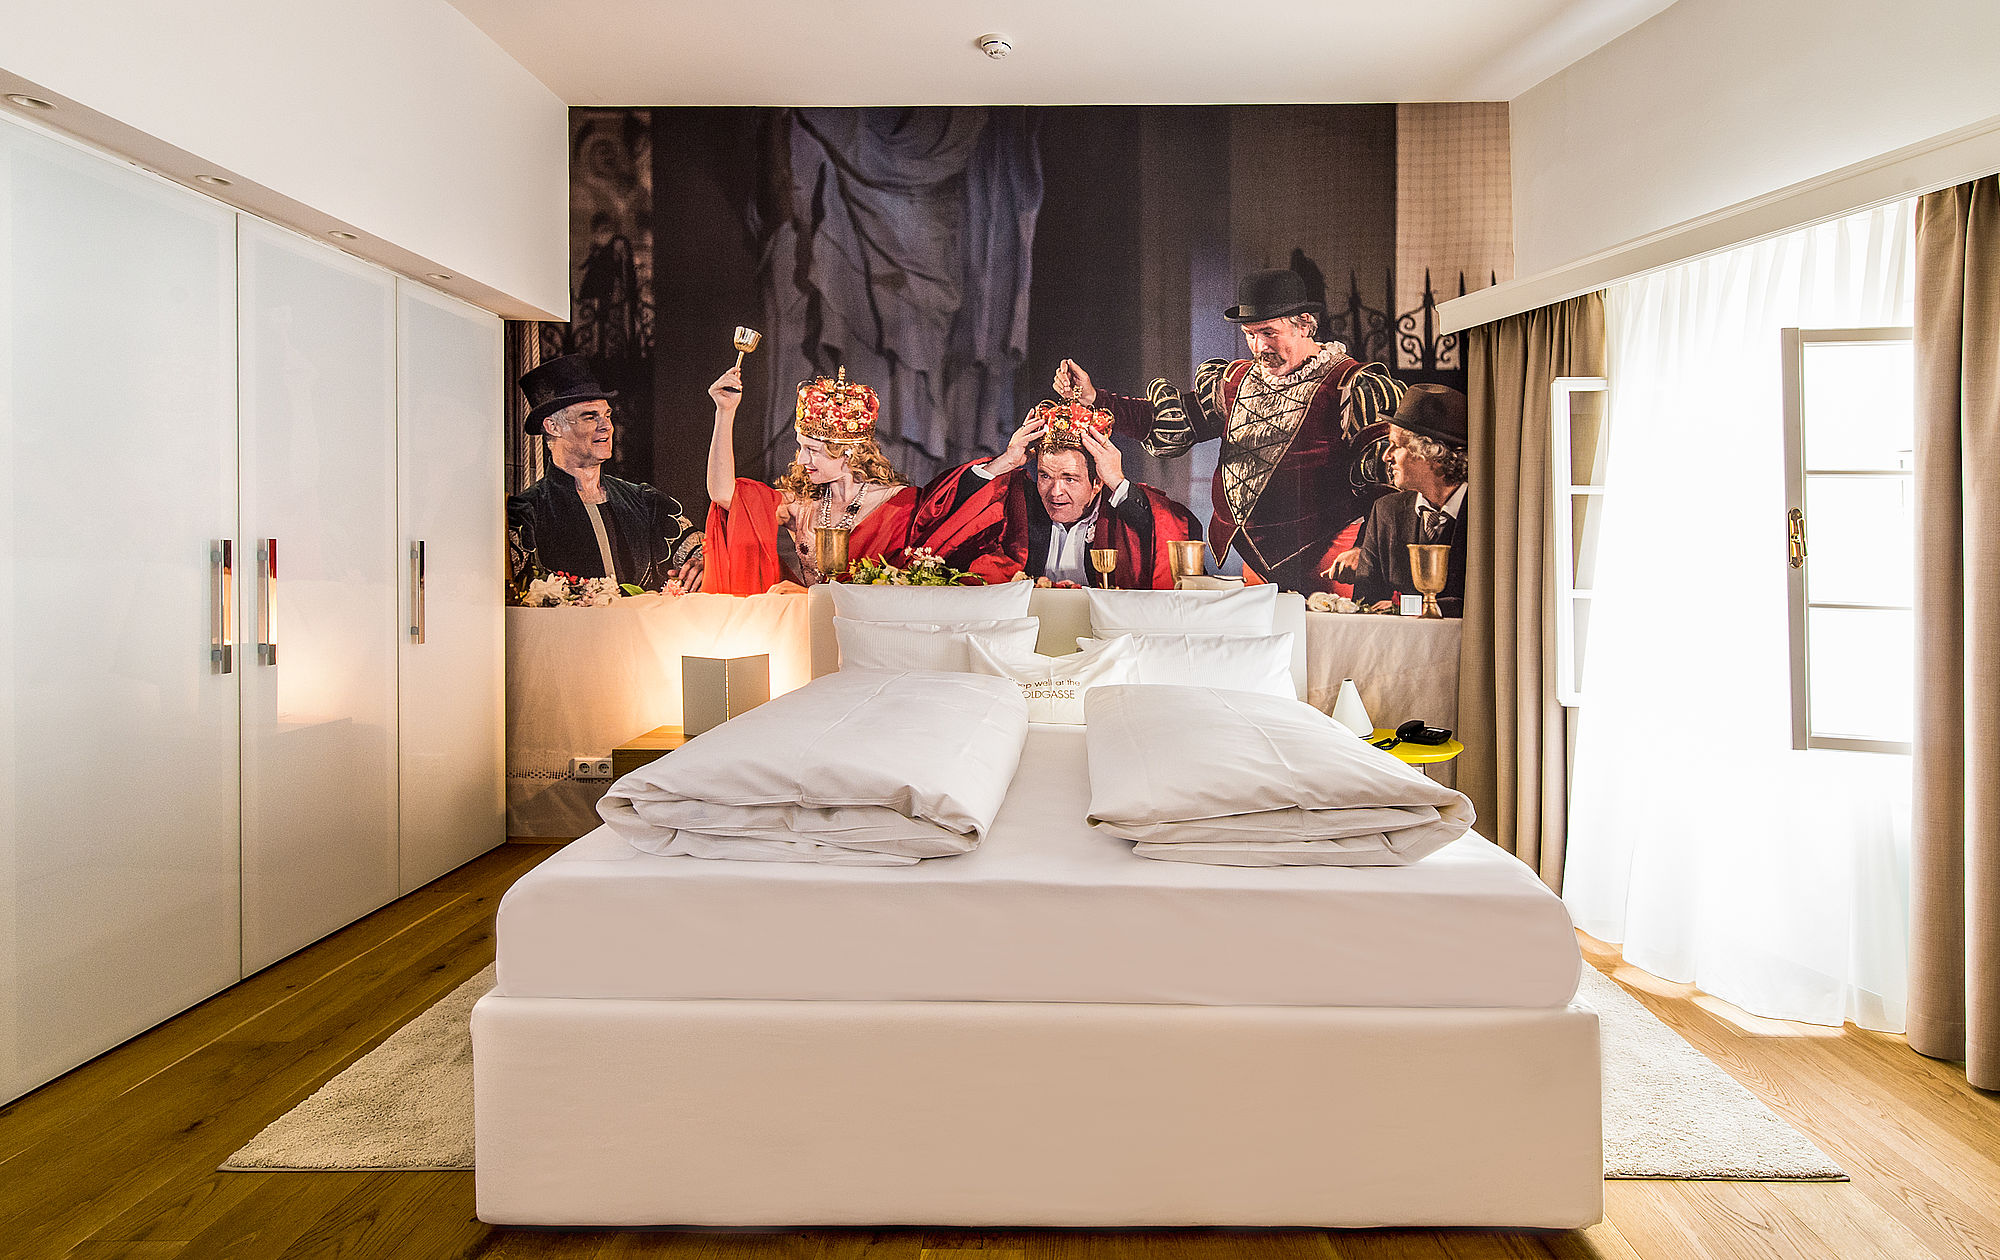 Roof Top Suite "Jedermann" im romantischen Hotel Salzburg mit komfortablem Doppelbett